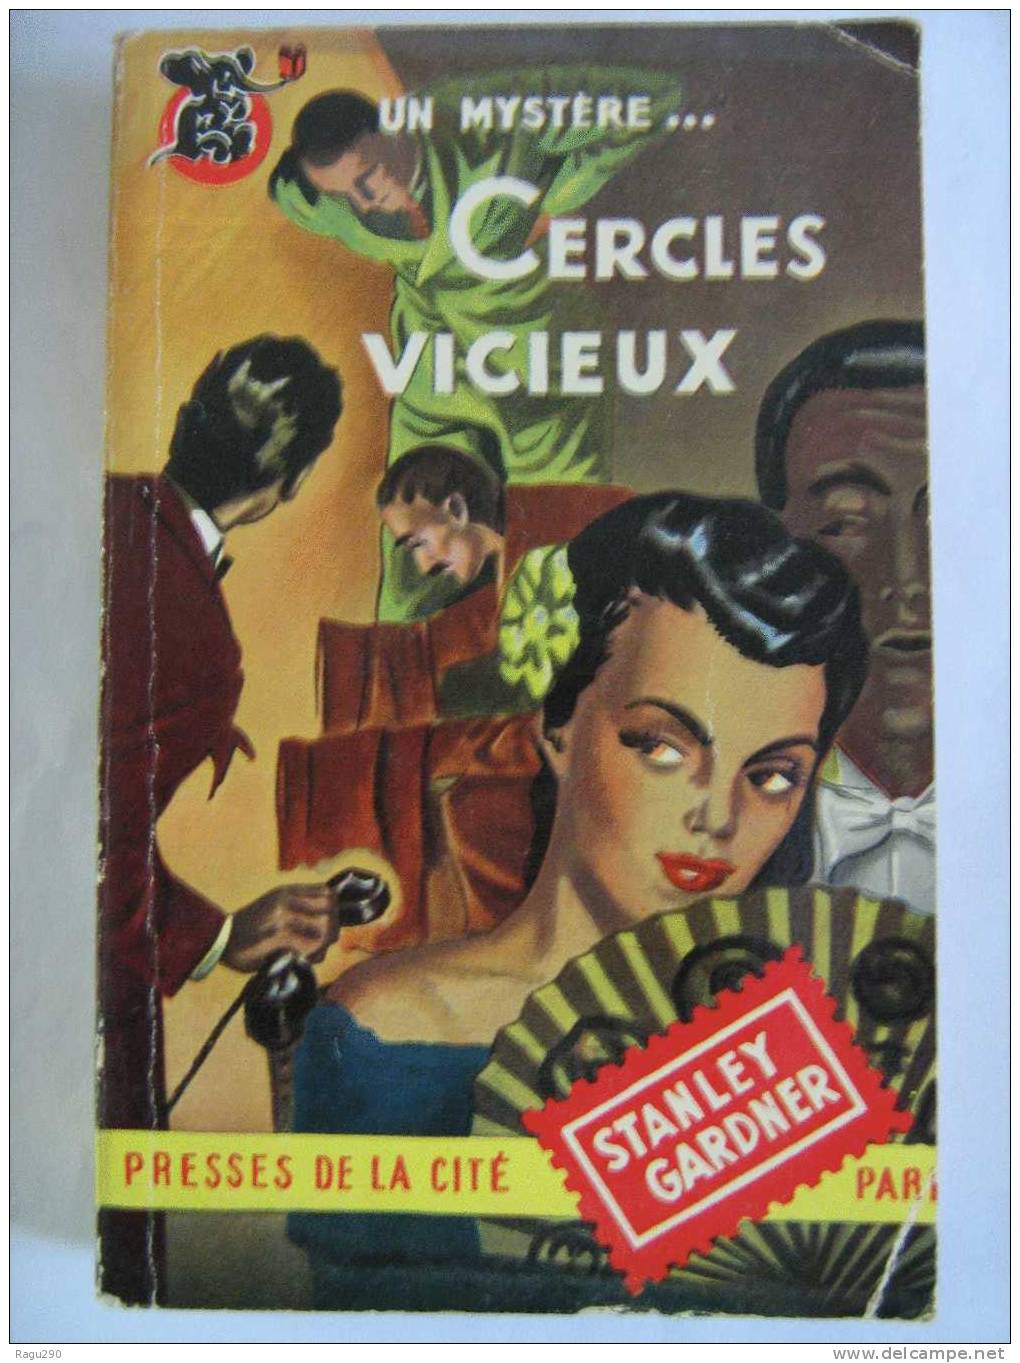 MYSTERE N°  13  CERCLES  VICIEUX    Par  ERLE  STANLEY  GARDNER    B. E. - Presses De La Cité